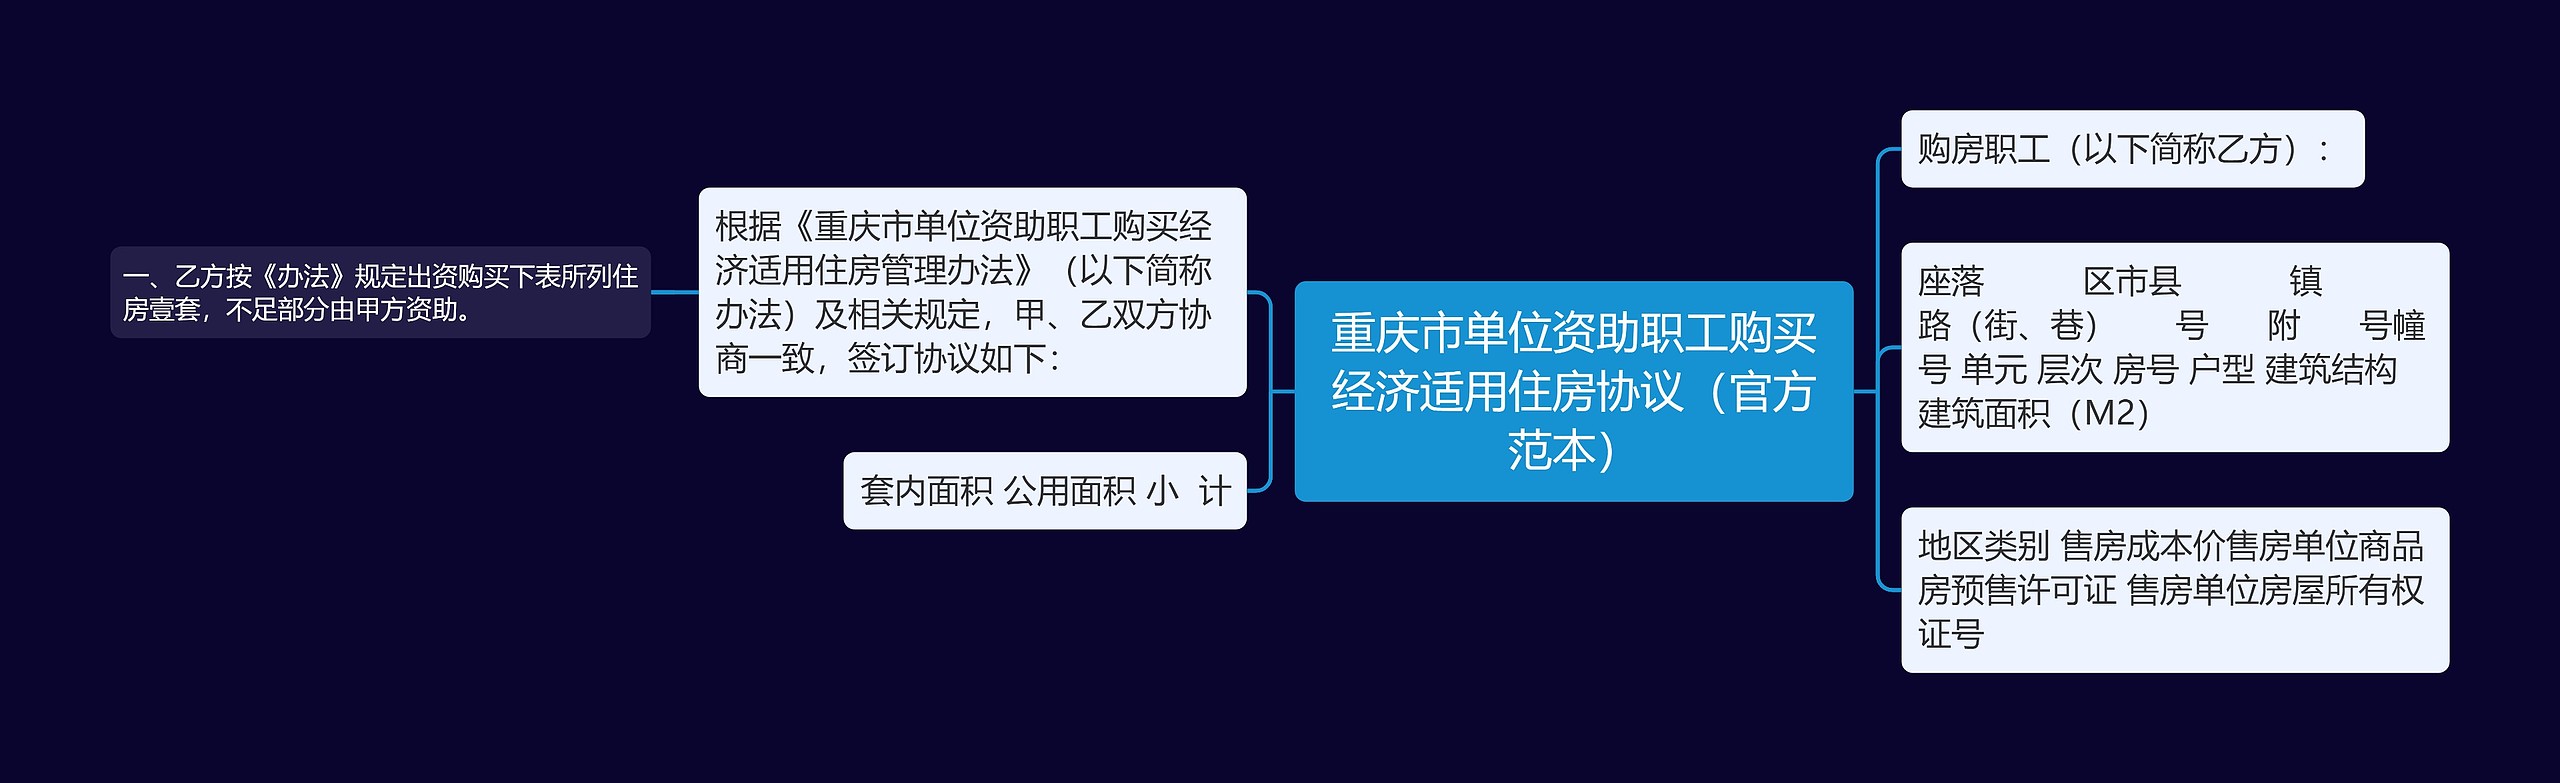 重庆市单位资助职工购买经济适用住房协议（官方范本）